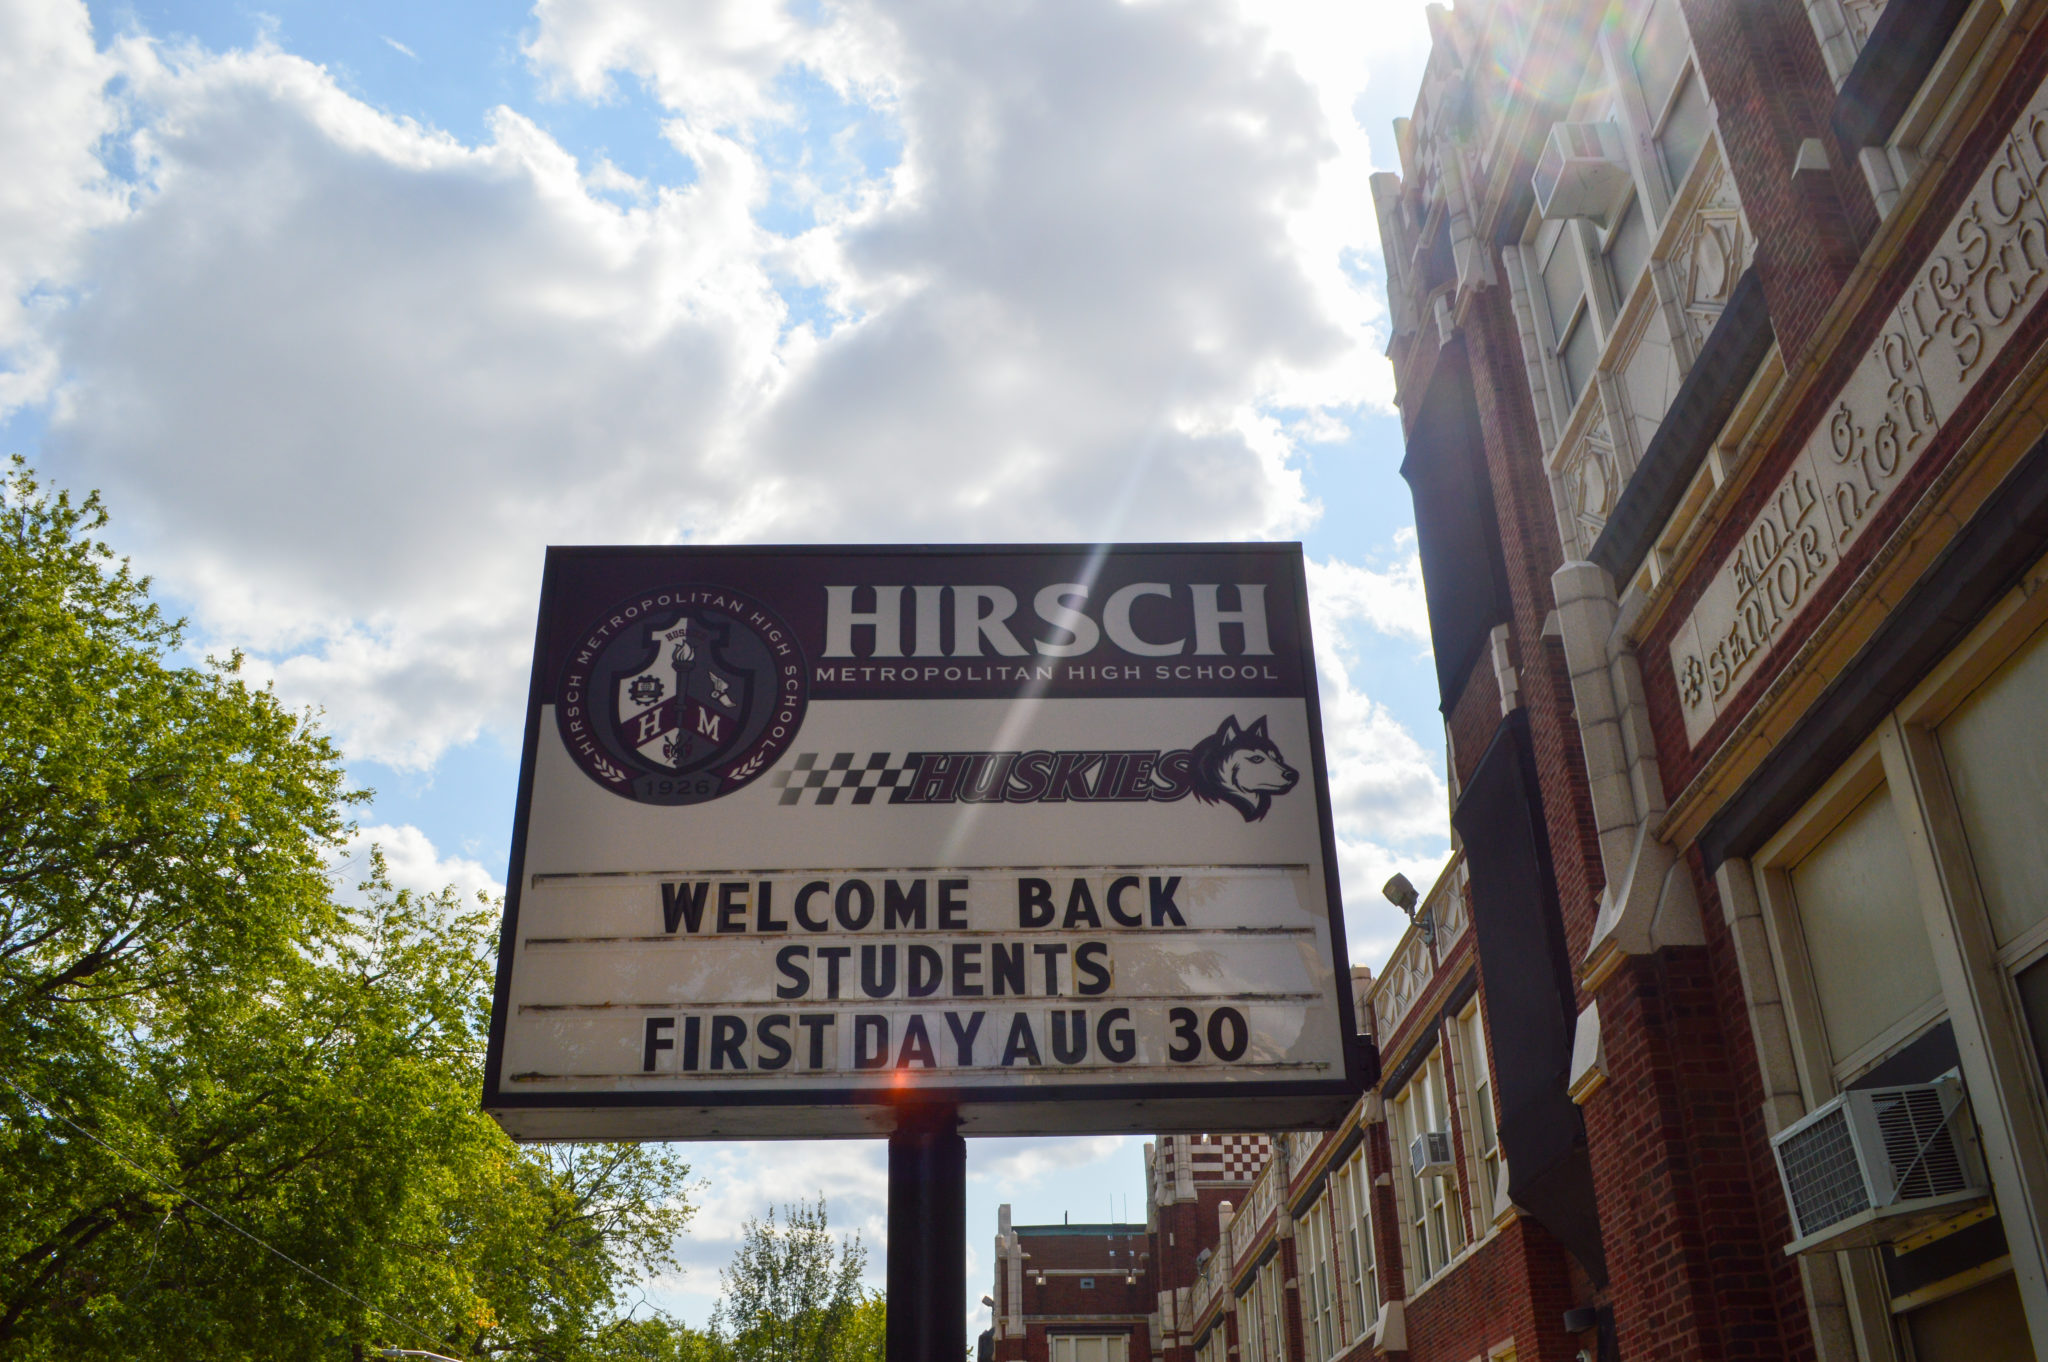 Hirsch street sign